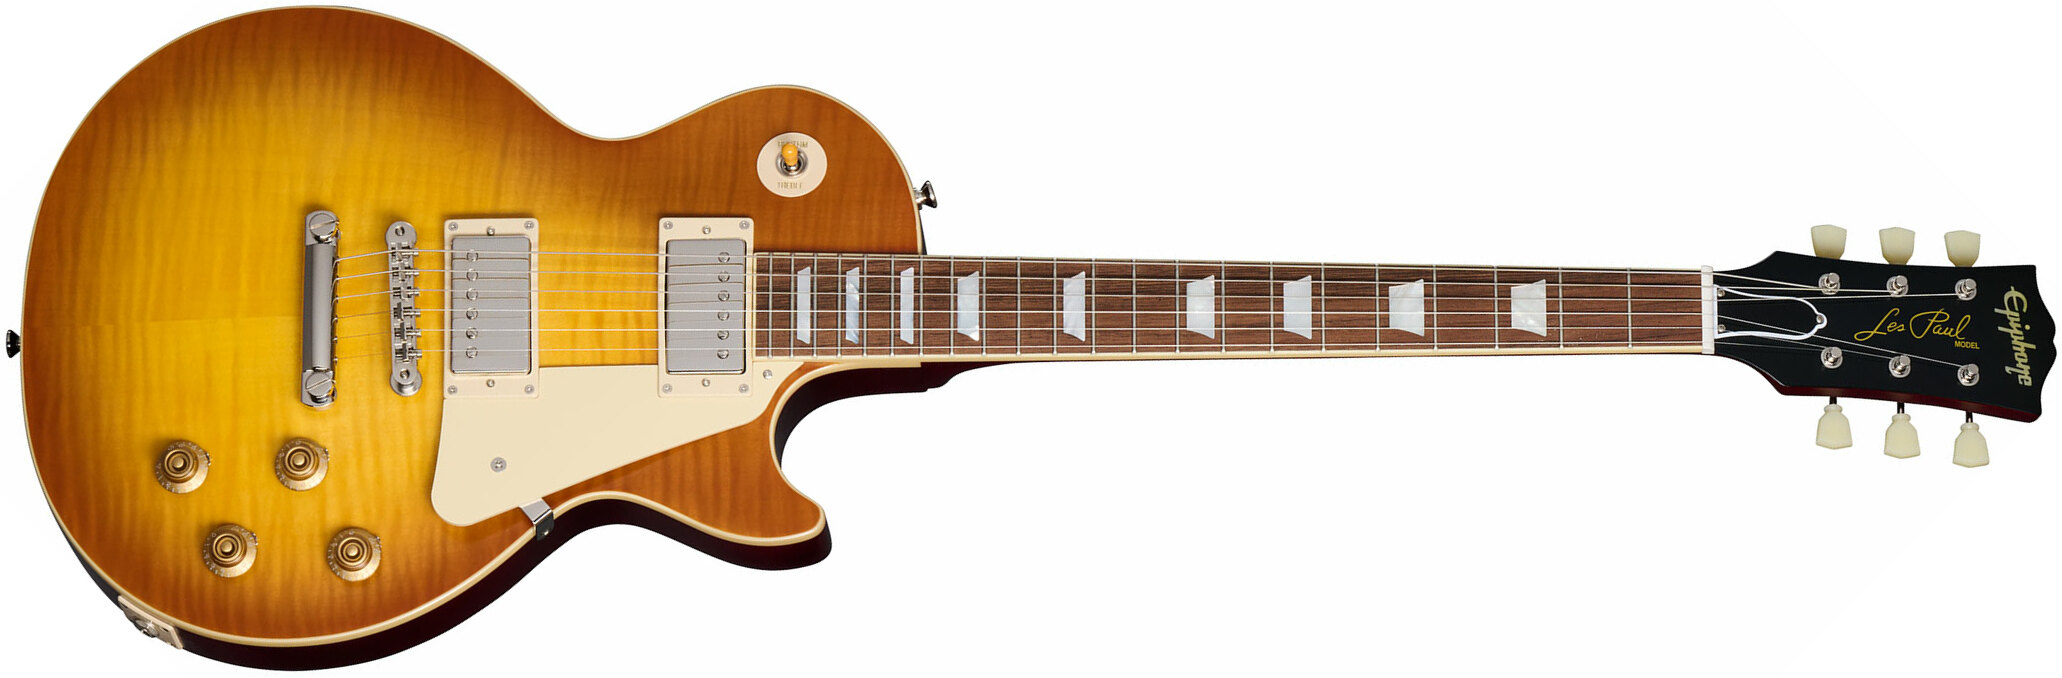 Epiphone 1959 Les Paul Standard Inspired By 2h Gibson Ht Lau - Vos Iced Tea Burst - Guitarra eléctrica de corte único. - Main picture